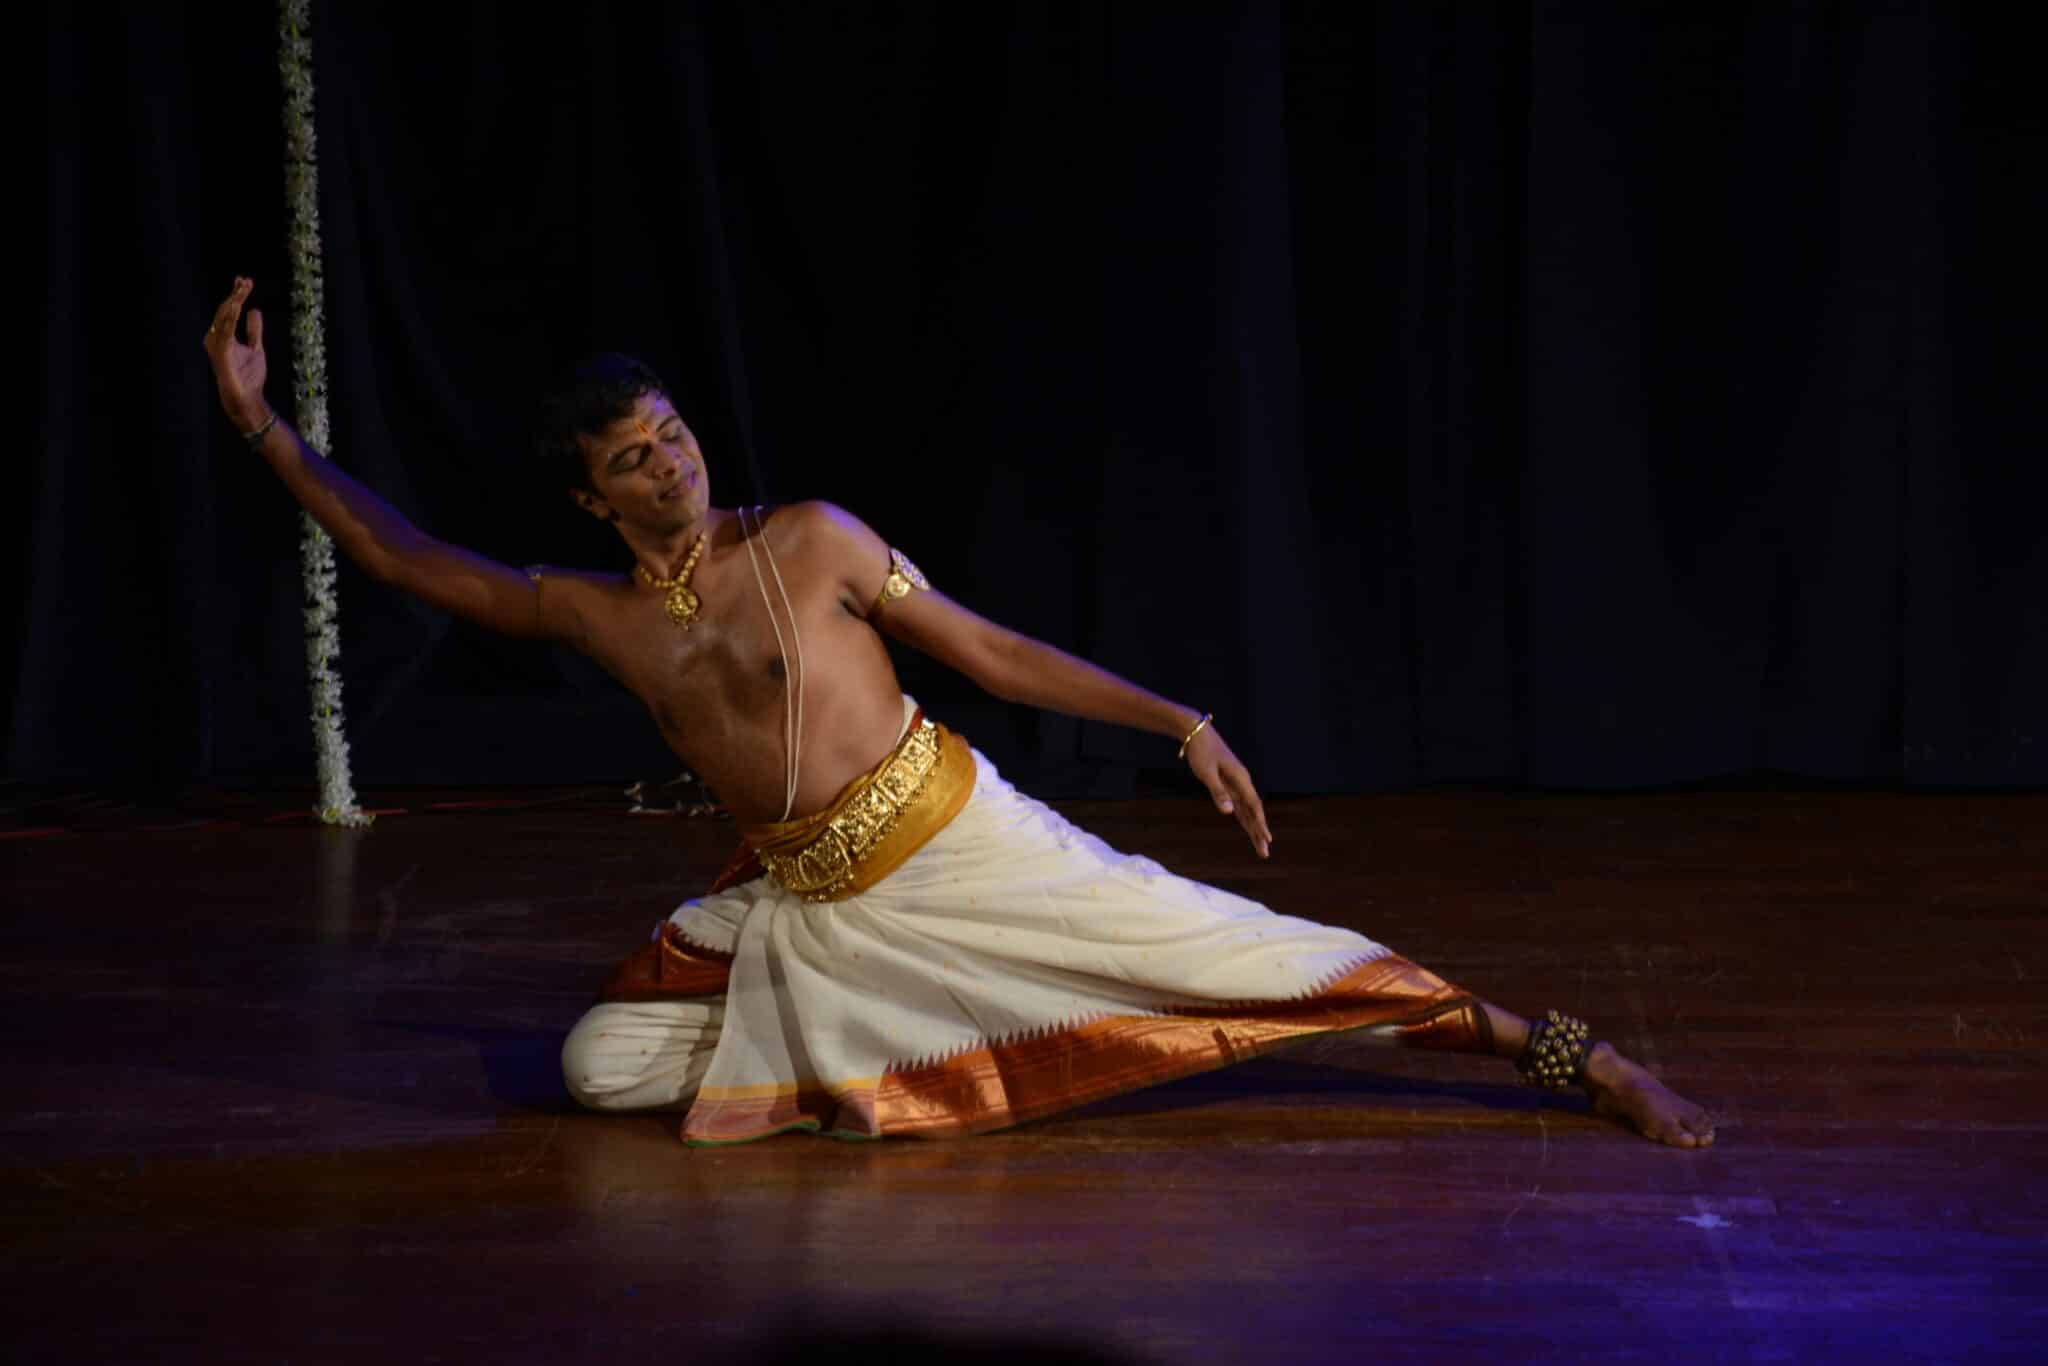 भरतनाट्यम नृत्यांगना आनंद सच्चिदानंदन। फोटो: सैमवेद सोसाइटी फॉर परफॉर्मिंग आर्ट्स के लिए सुरेश मुरलीधरन